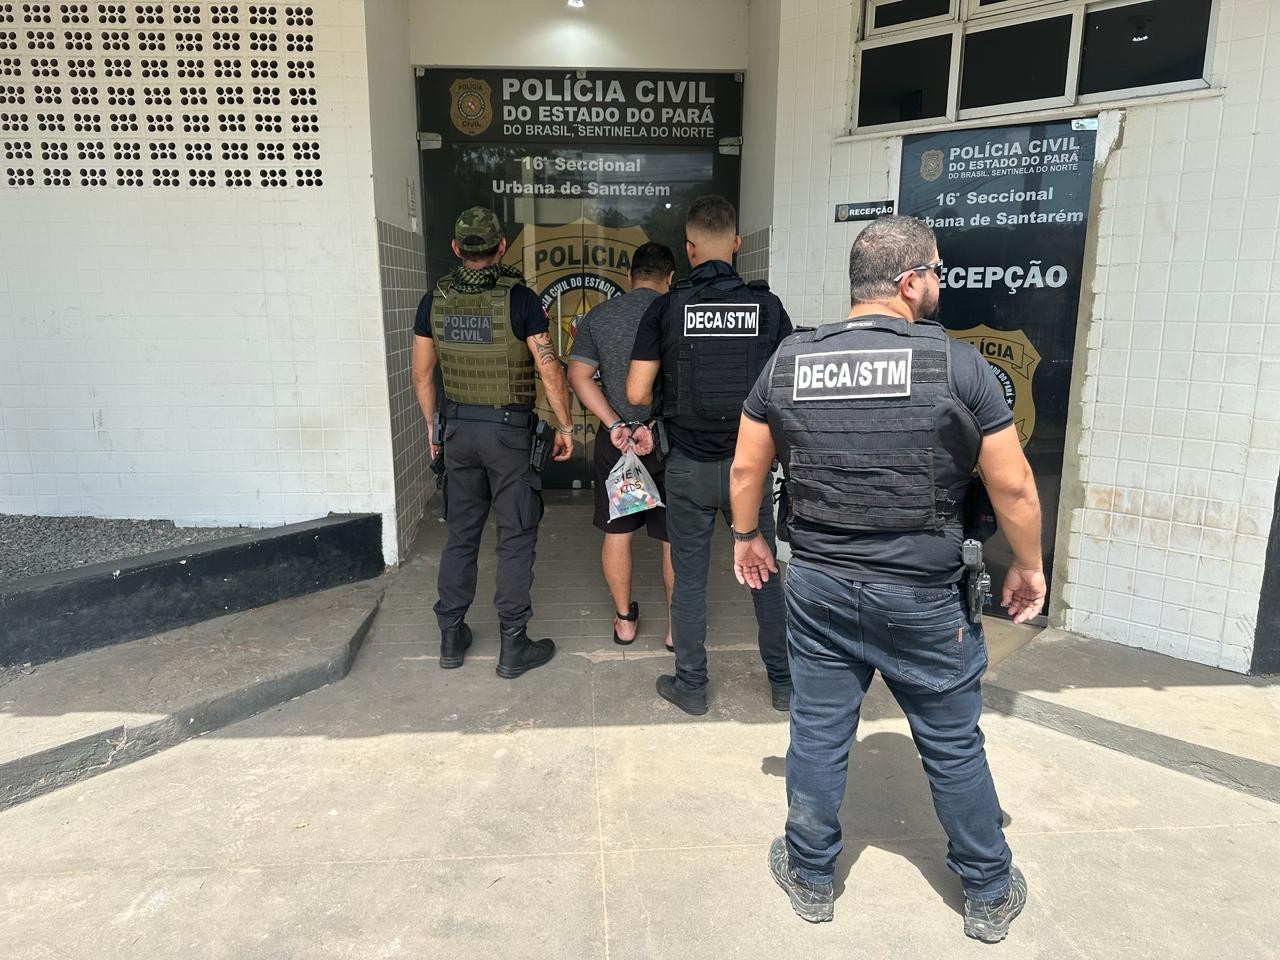 PC de Santarém cumpre mandado de prisão contra líder de facção criminosa acusado de homicídio no Amapá